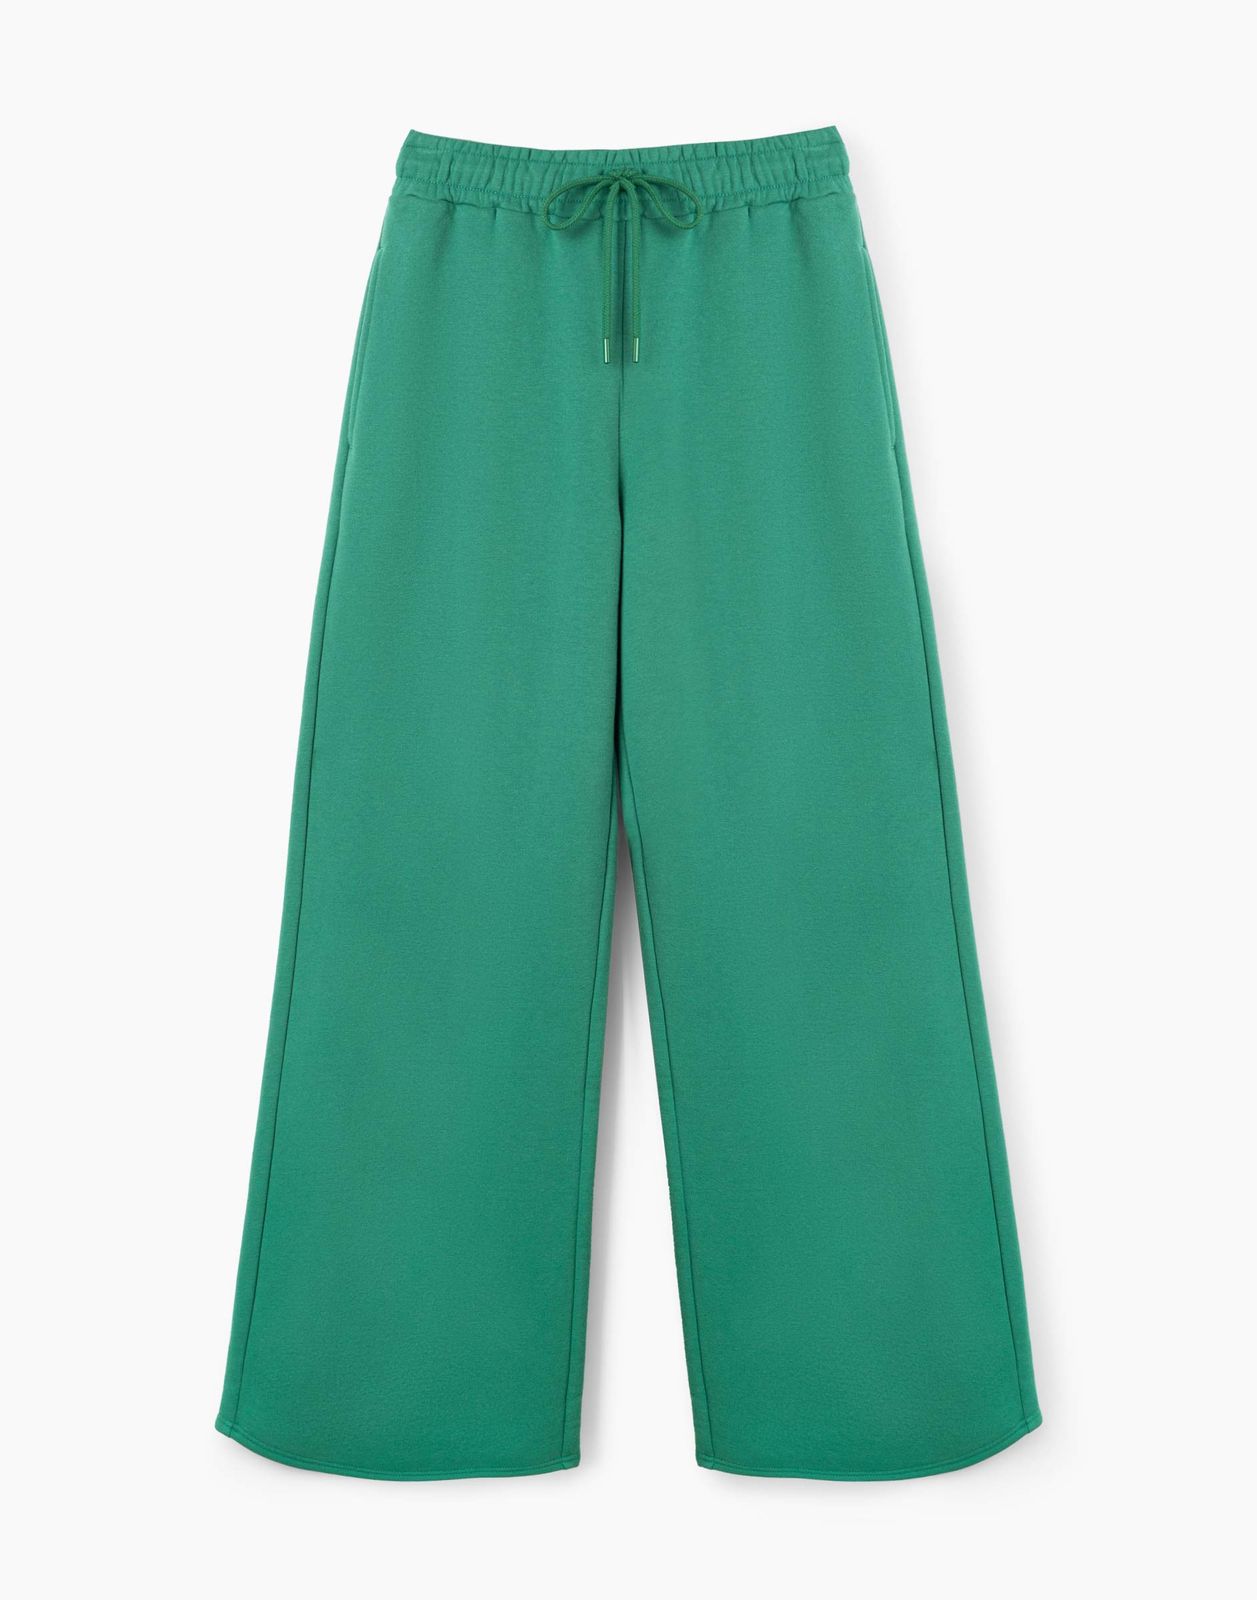 Спортивные брюки женские Gloria Jeans GAC020946 зеленые XXS/158 (36-38)